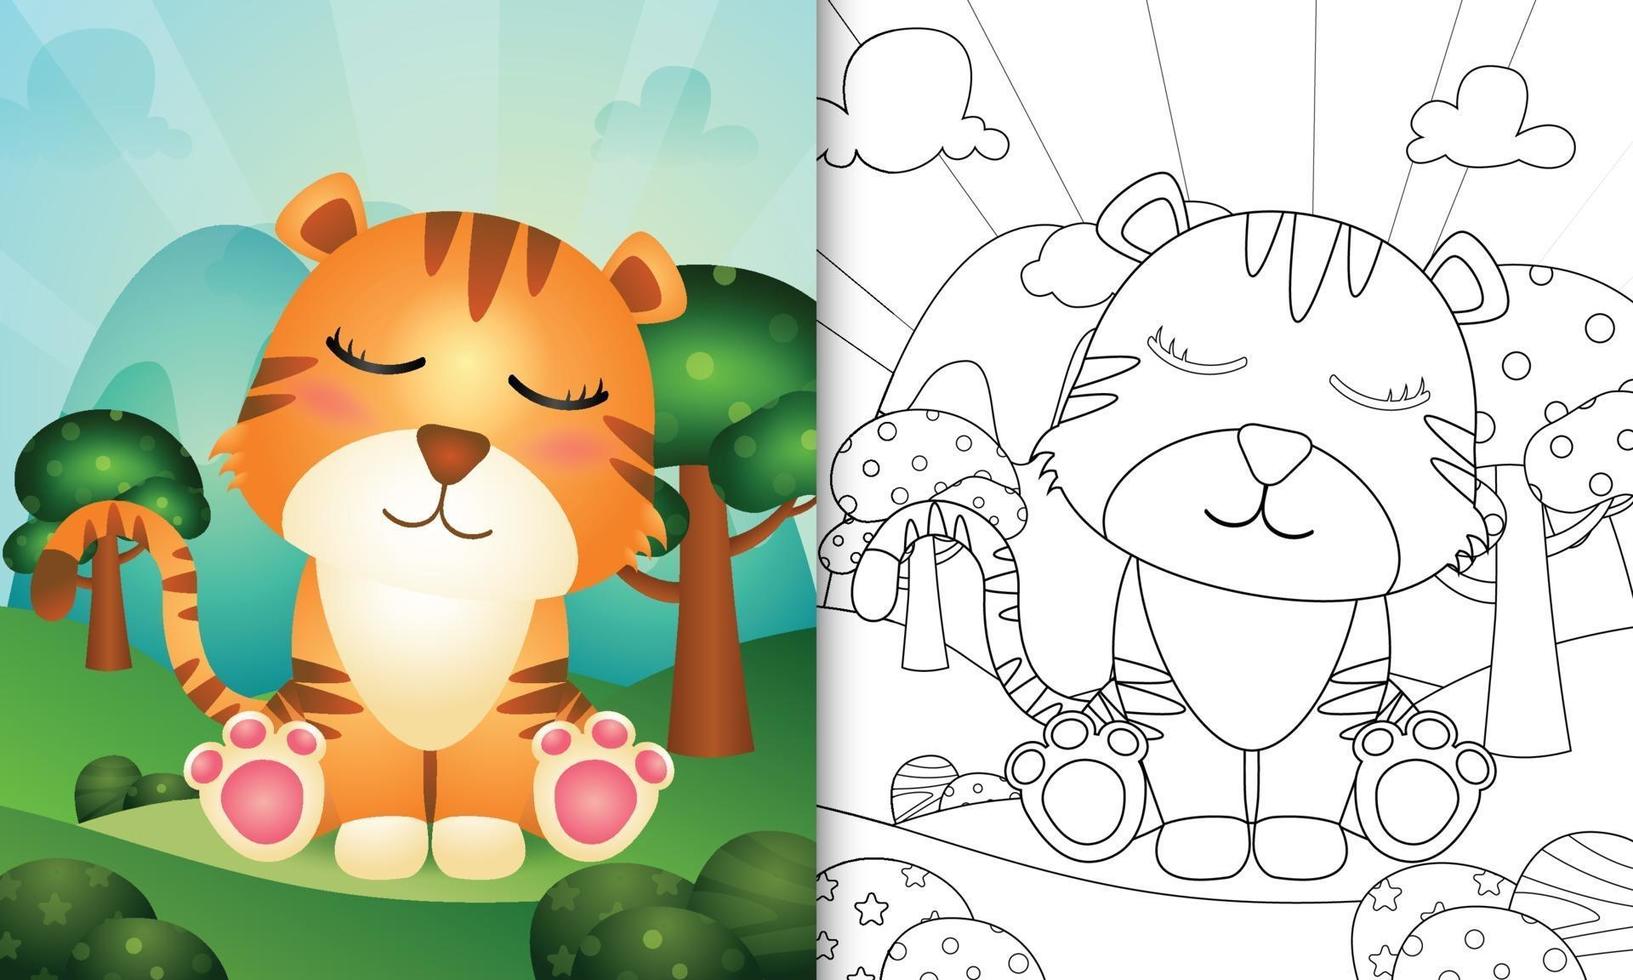 kleurboek voor kinderen met een schattige tijger karakter illustratie vector